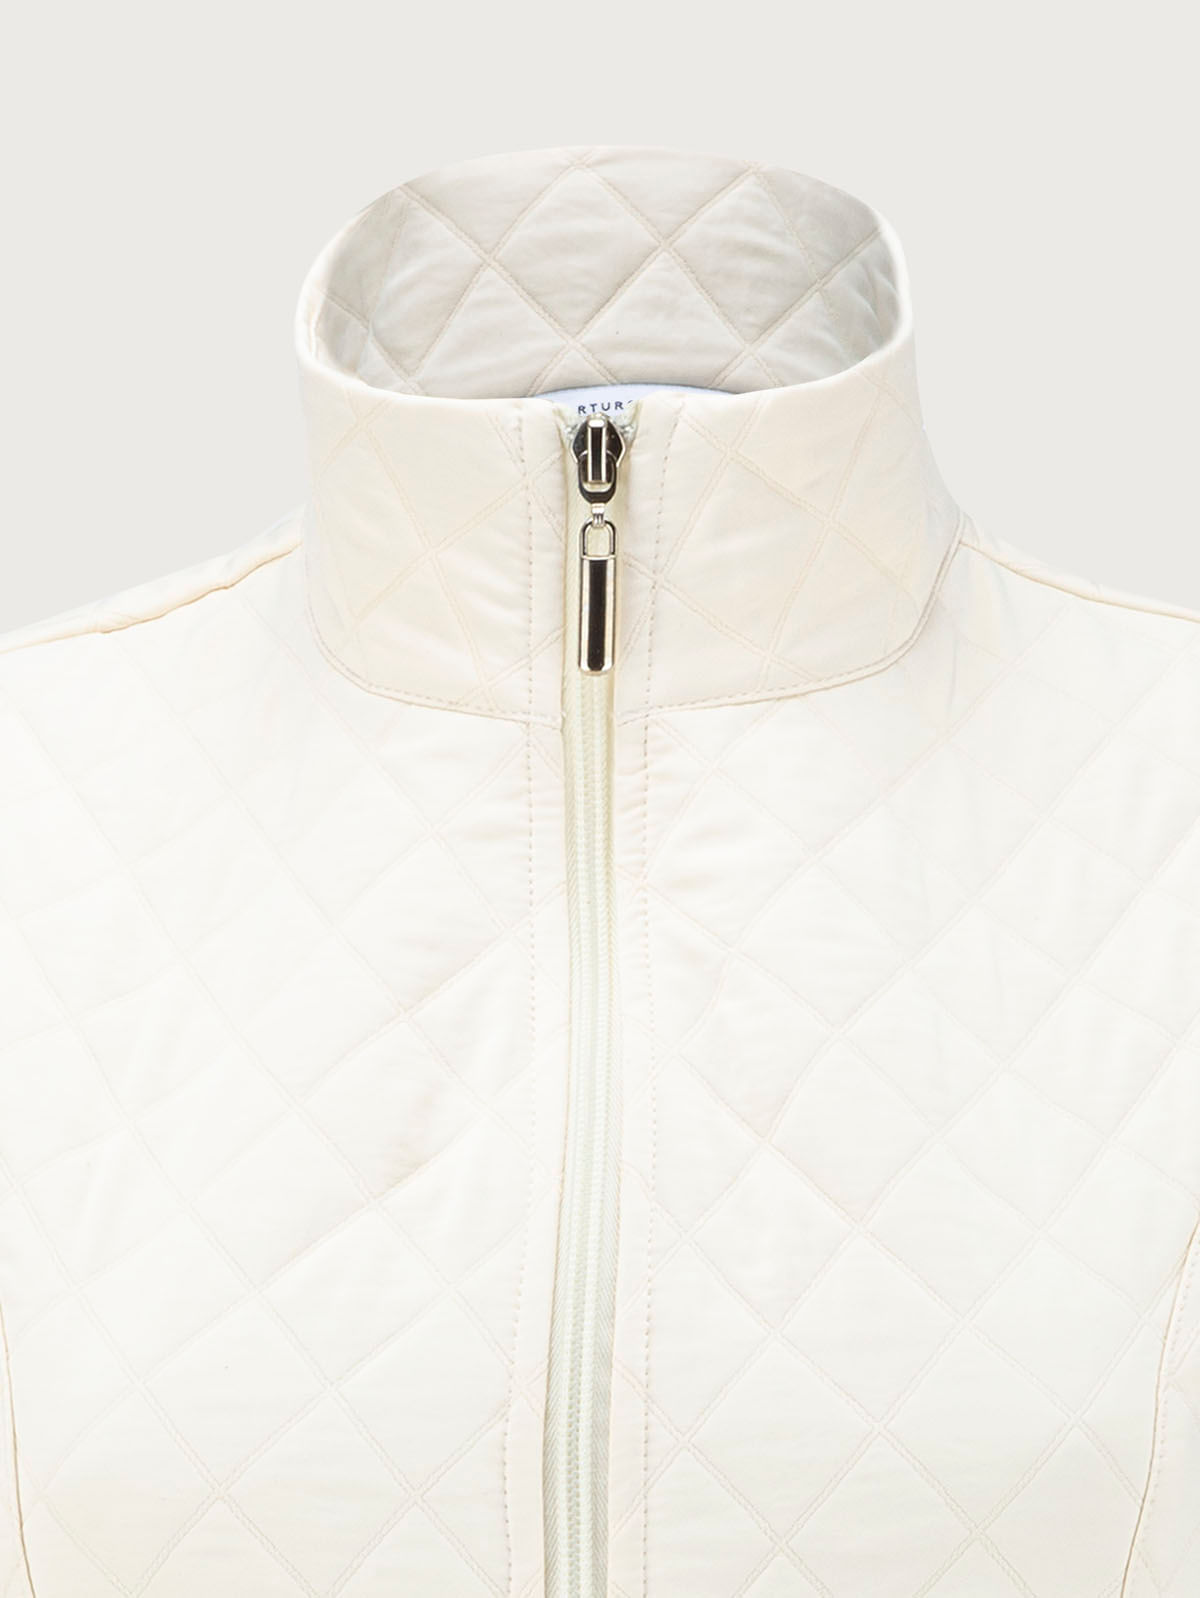 arizona- Chaleco acolchado color blanco para mujer, cuello alto.